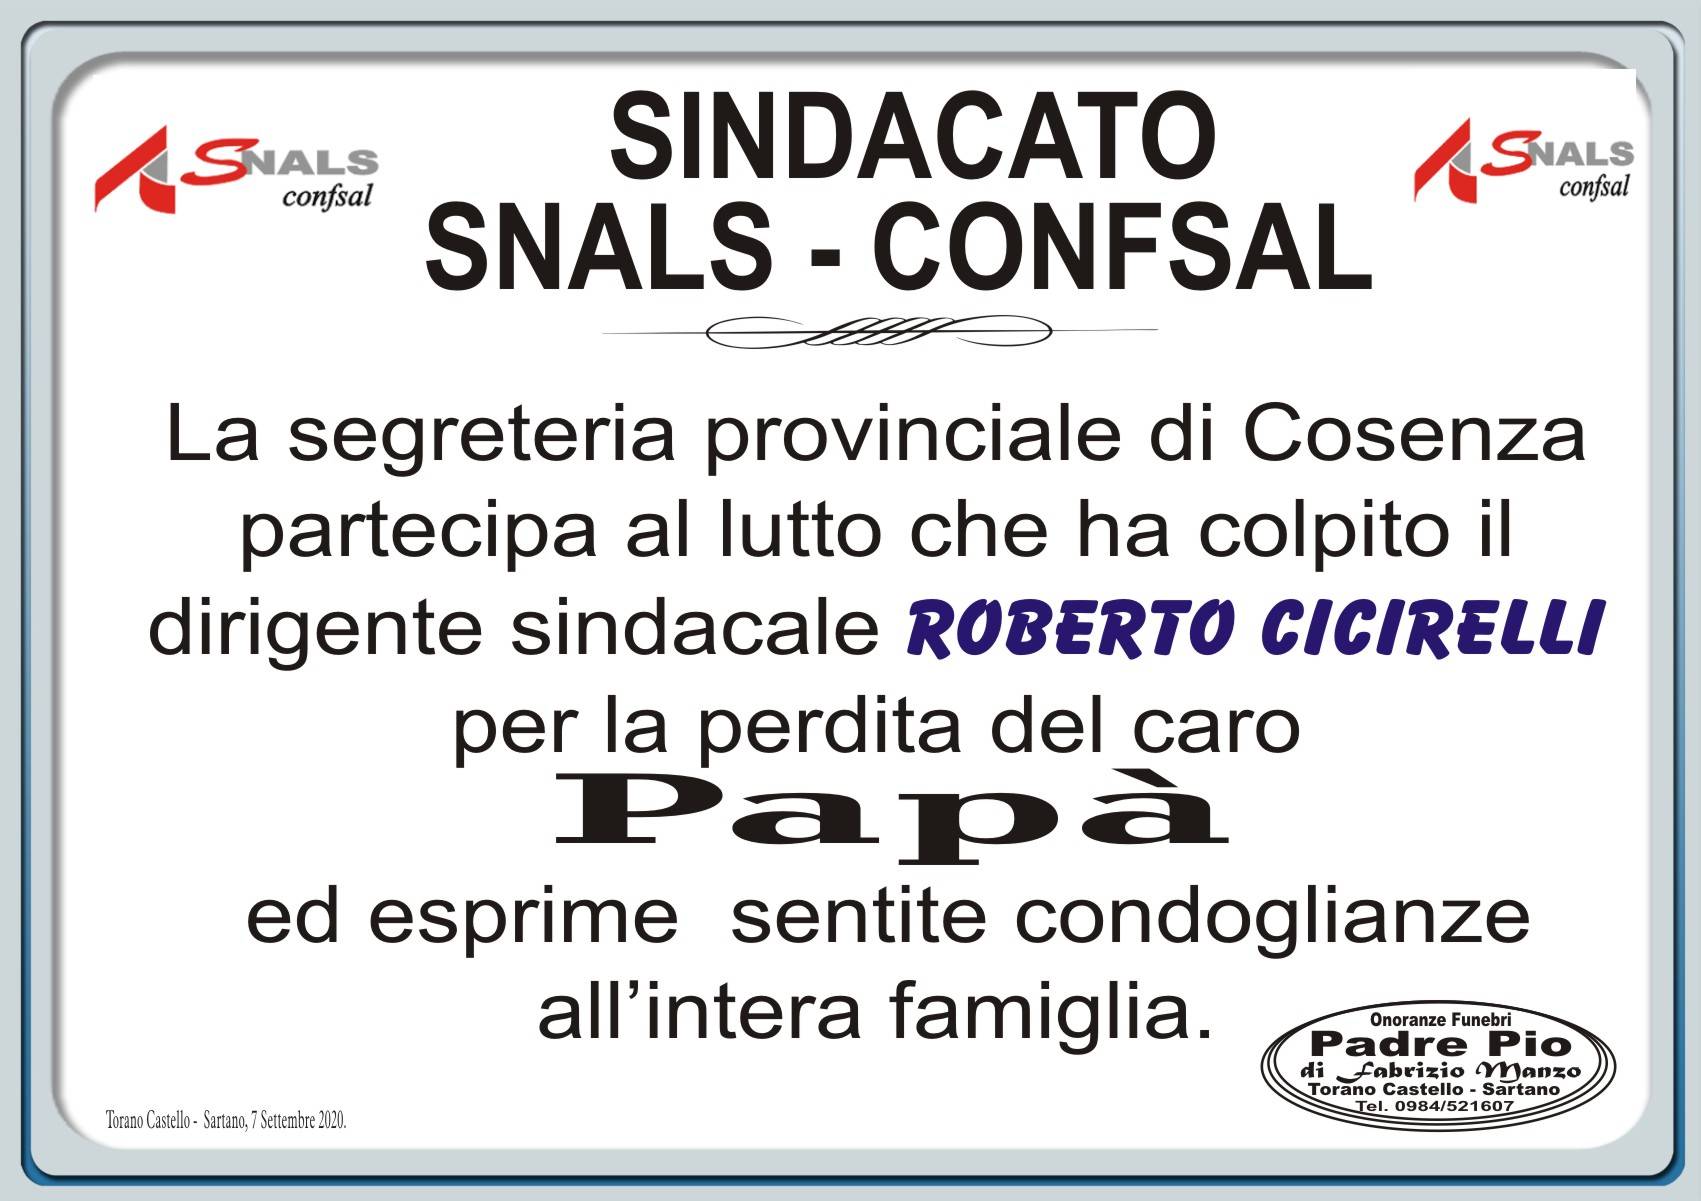 Sindacato Snals-Confsal